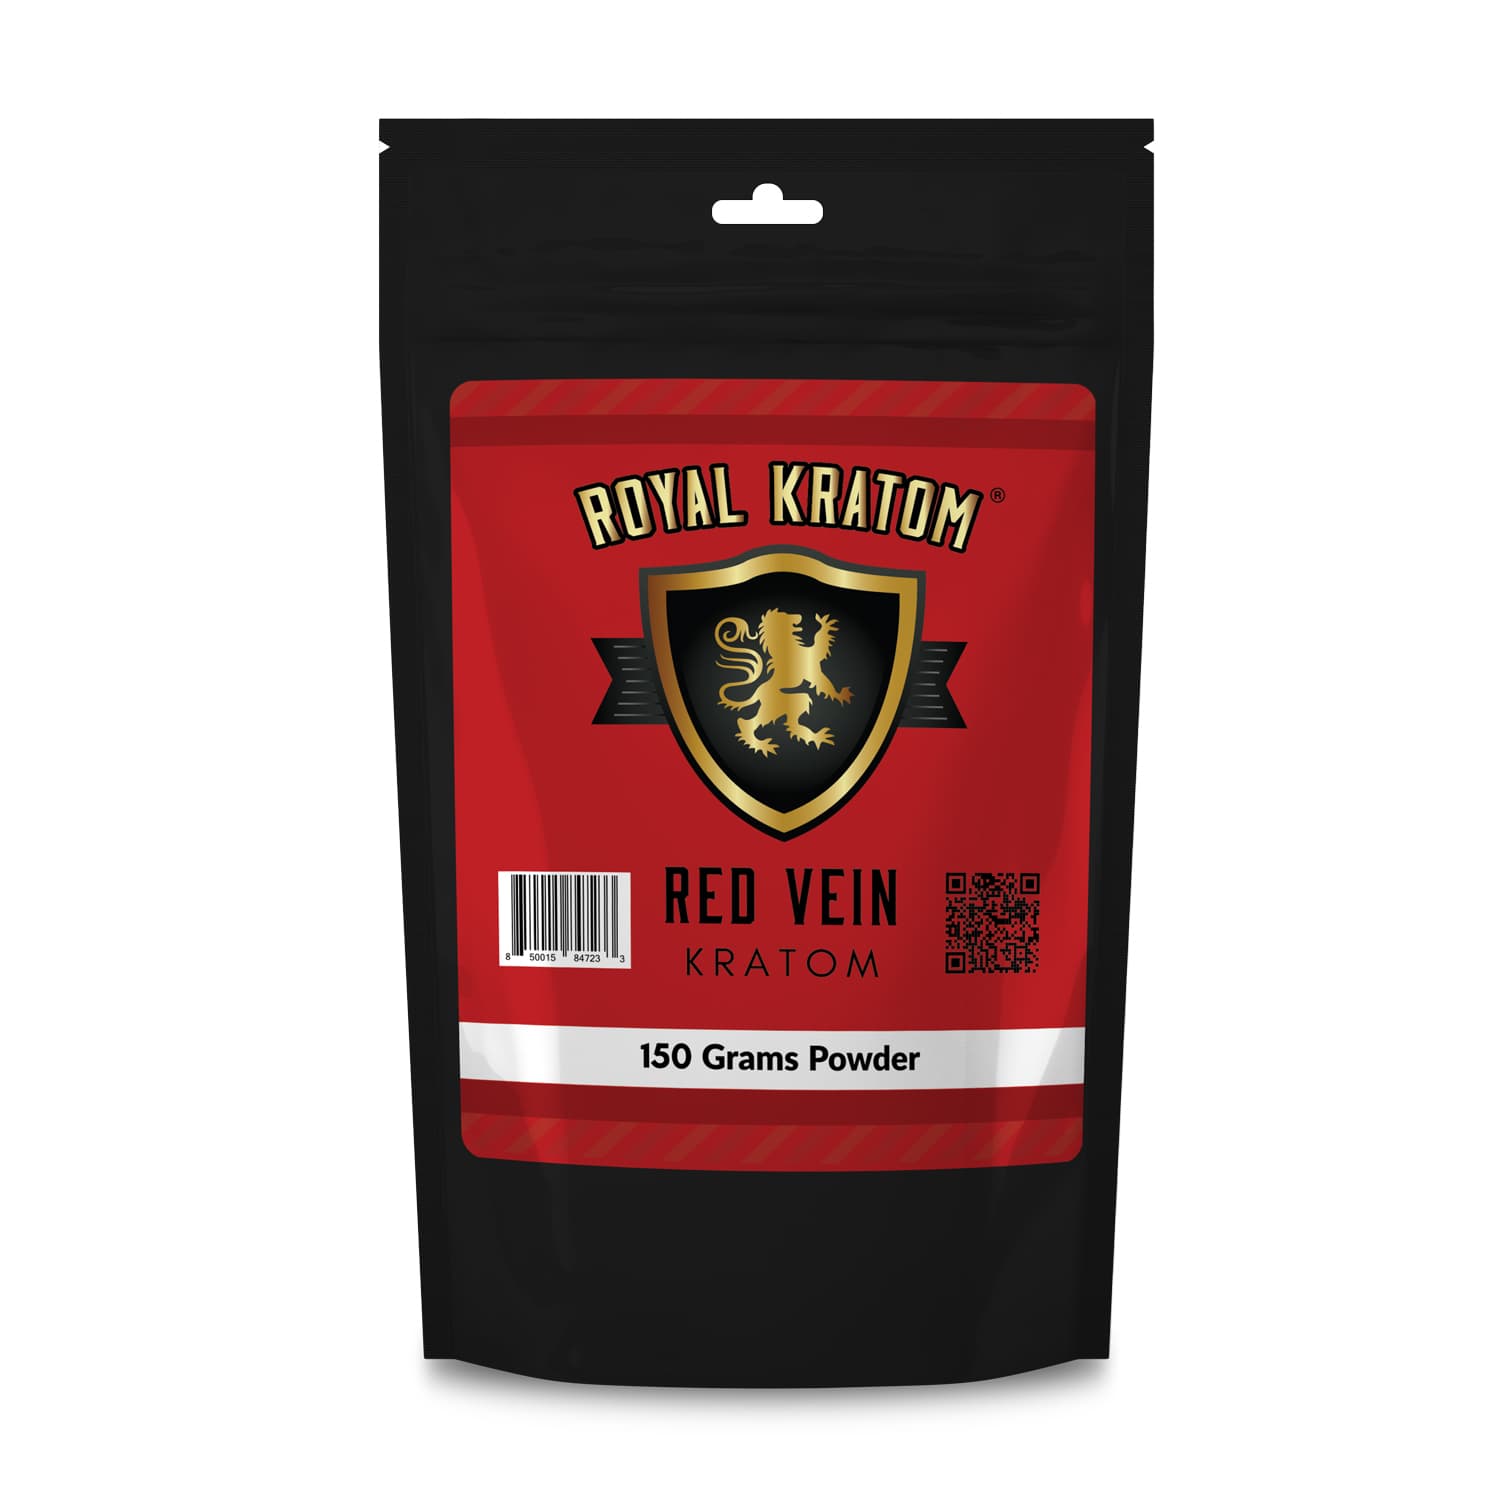 Royal Kratom Red Vein Kratom Powder 150 Grams front of package